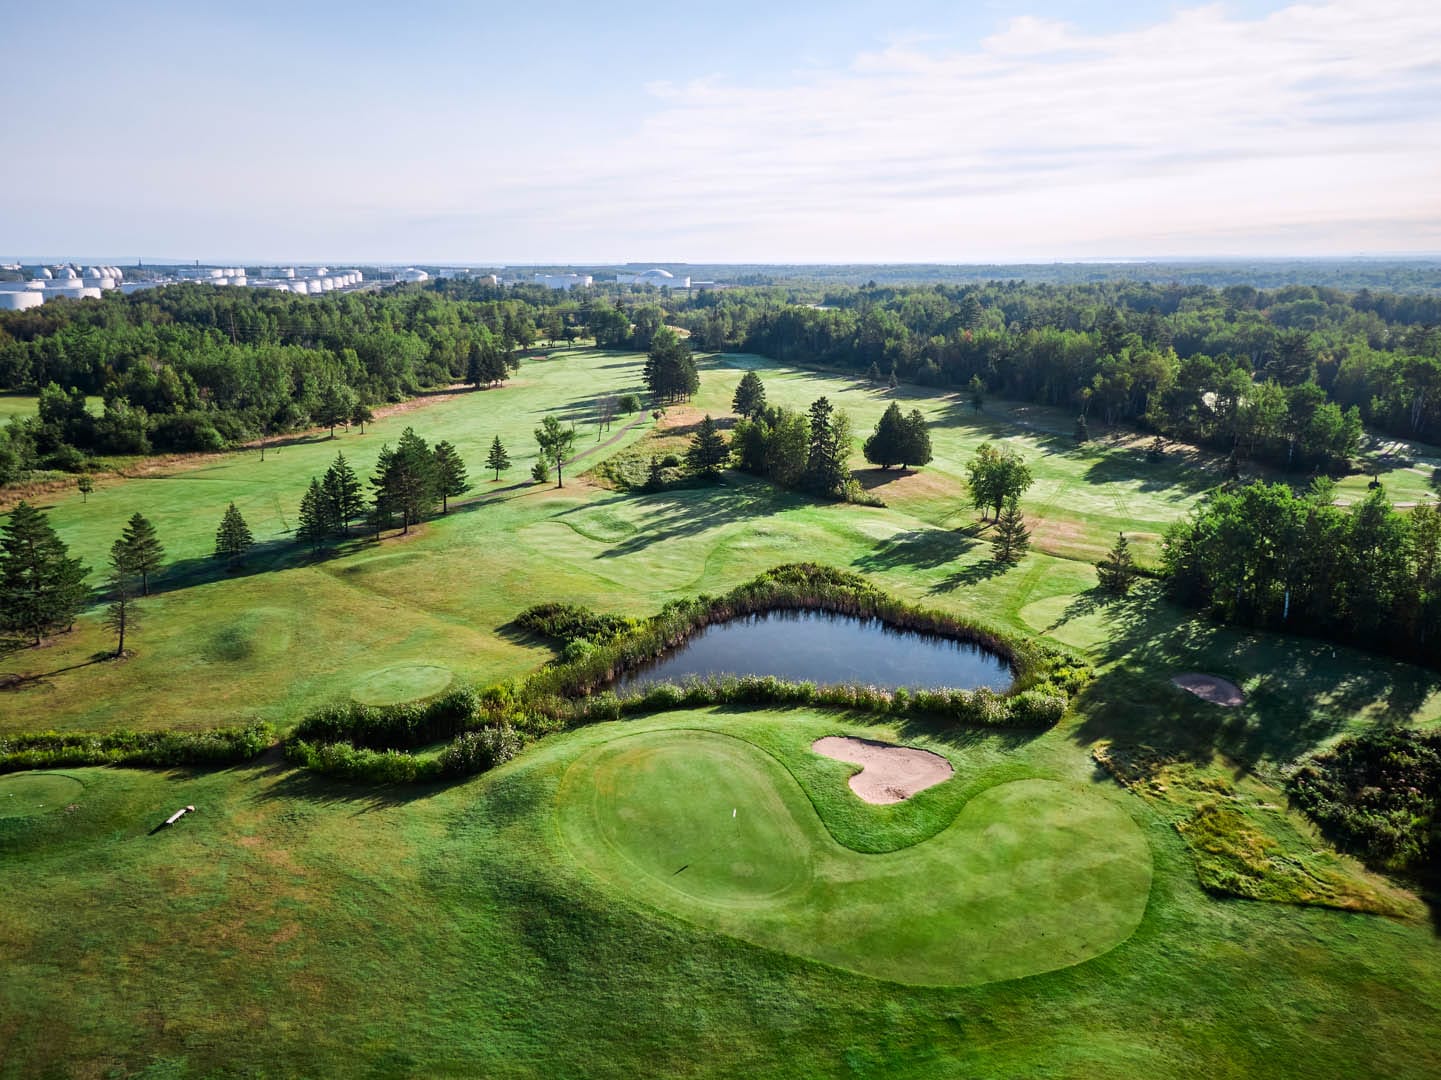 Birds-eye view of a golf course.